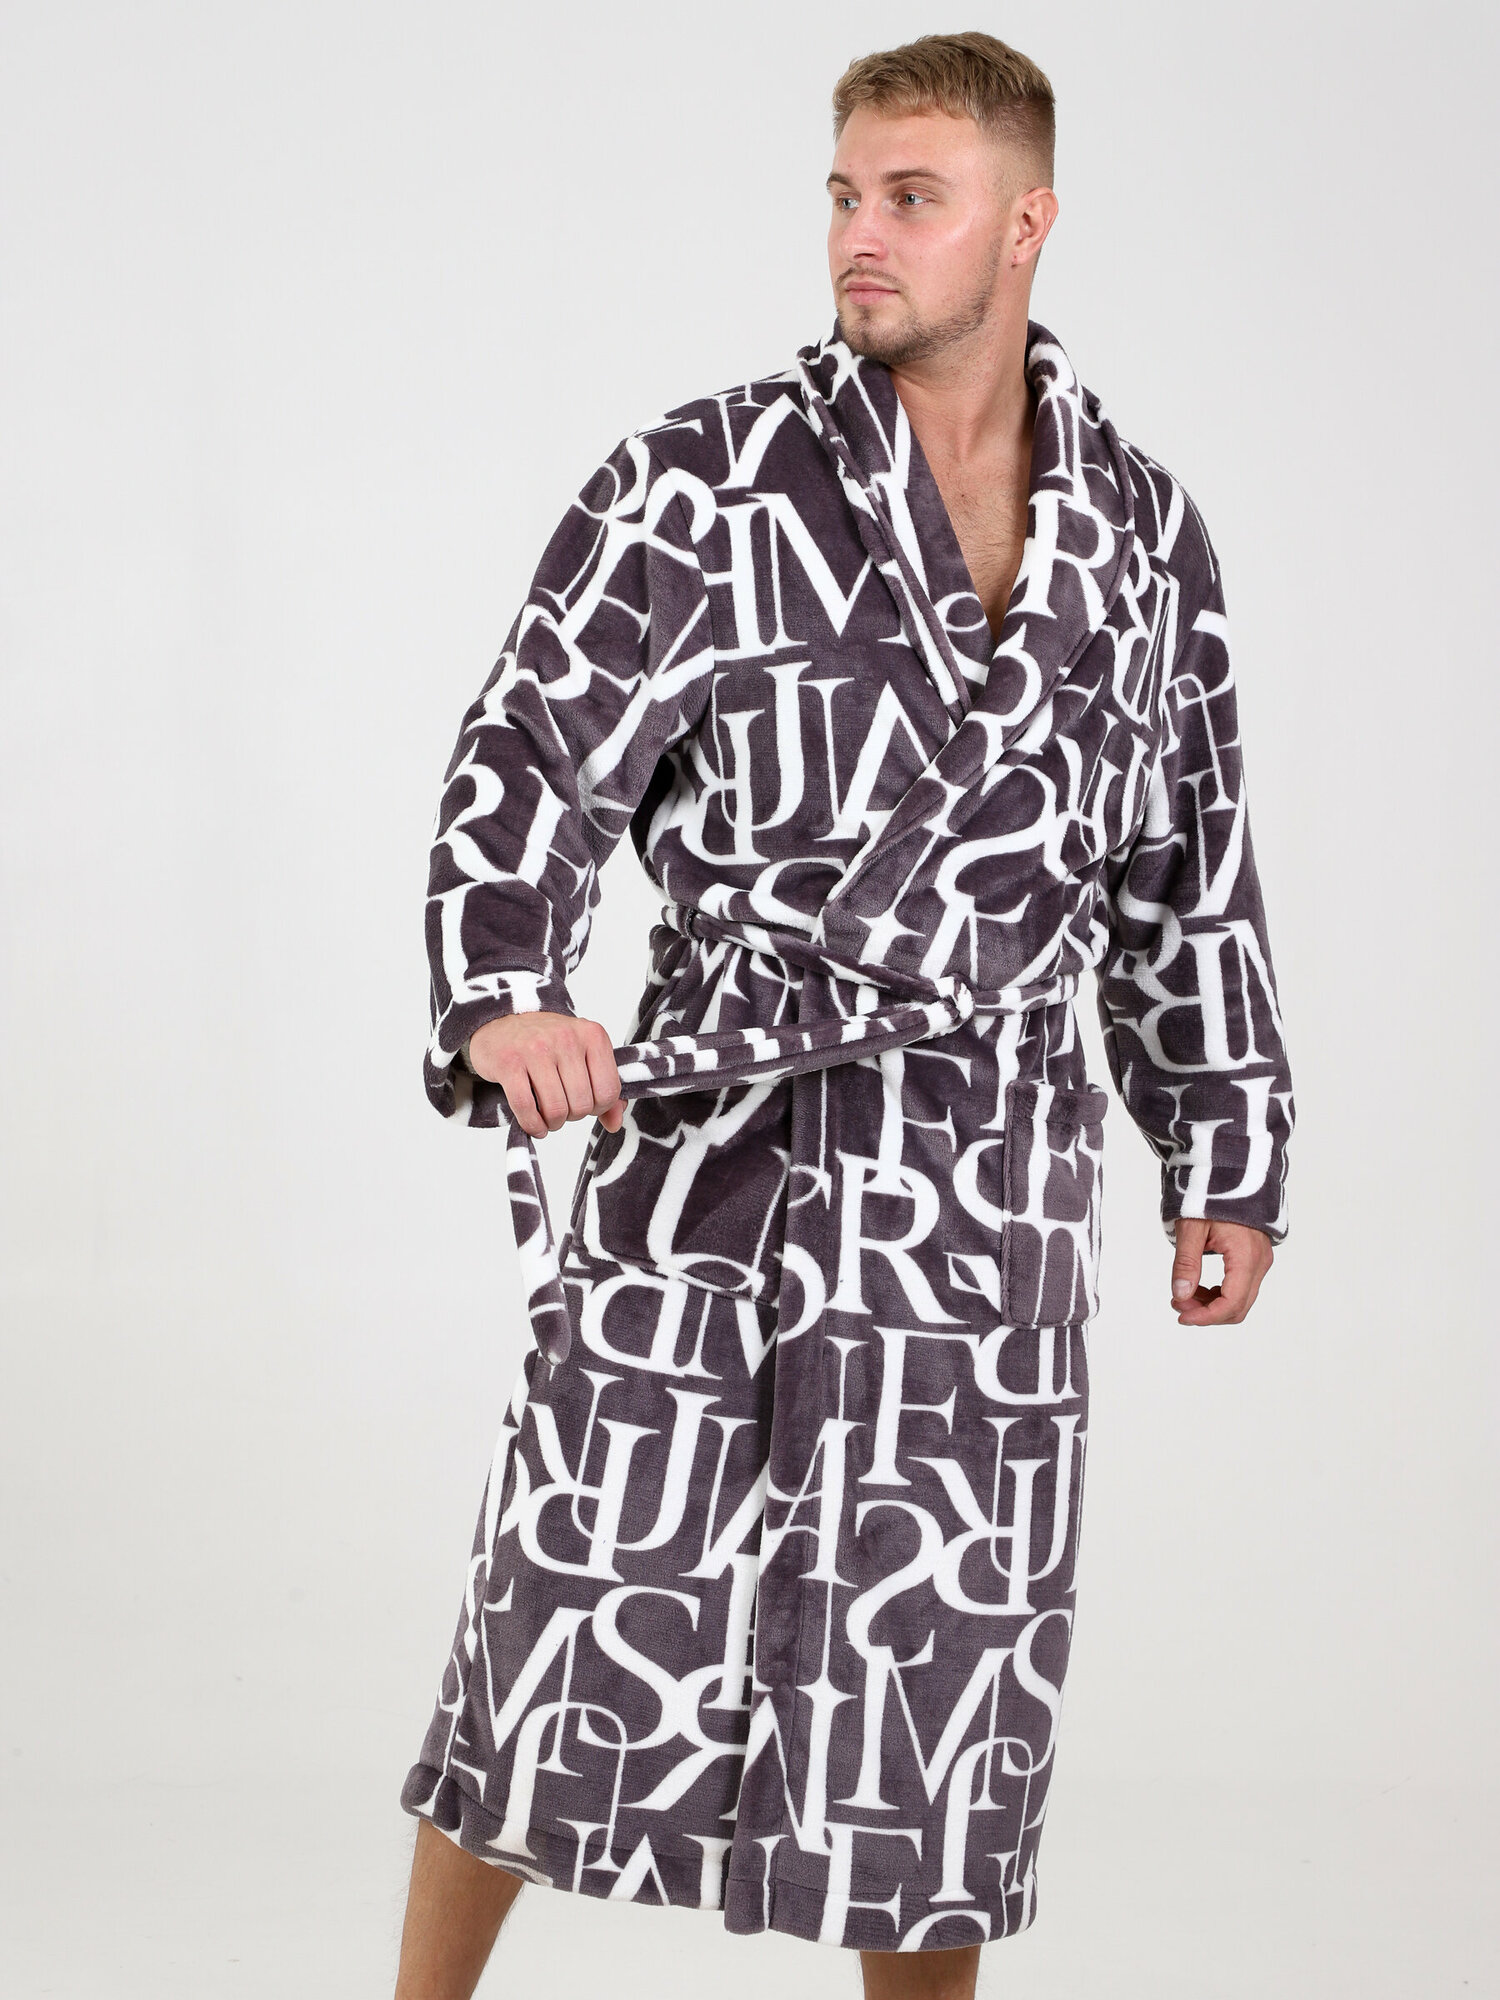 Халат IvCapriz, длинный рукав, пояс/ремень, утепленная, карманы, трикотажная, банный халат, размер 46, белый, коричневый - фотография № 6